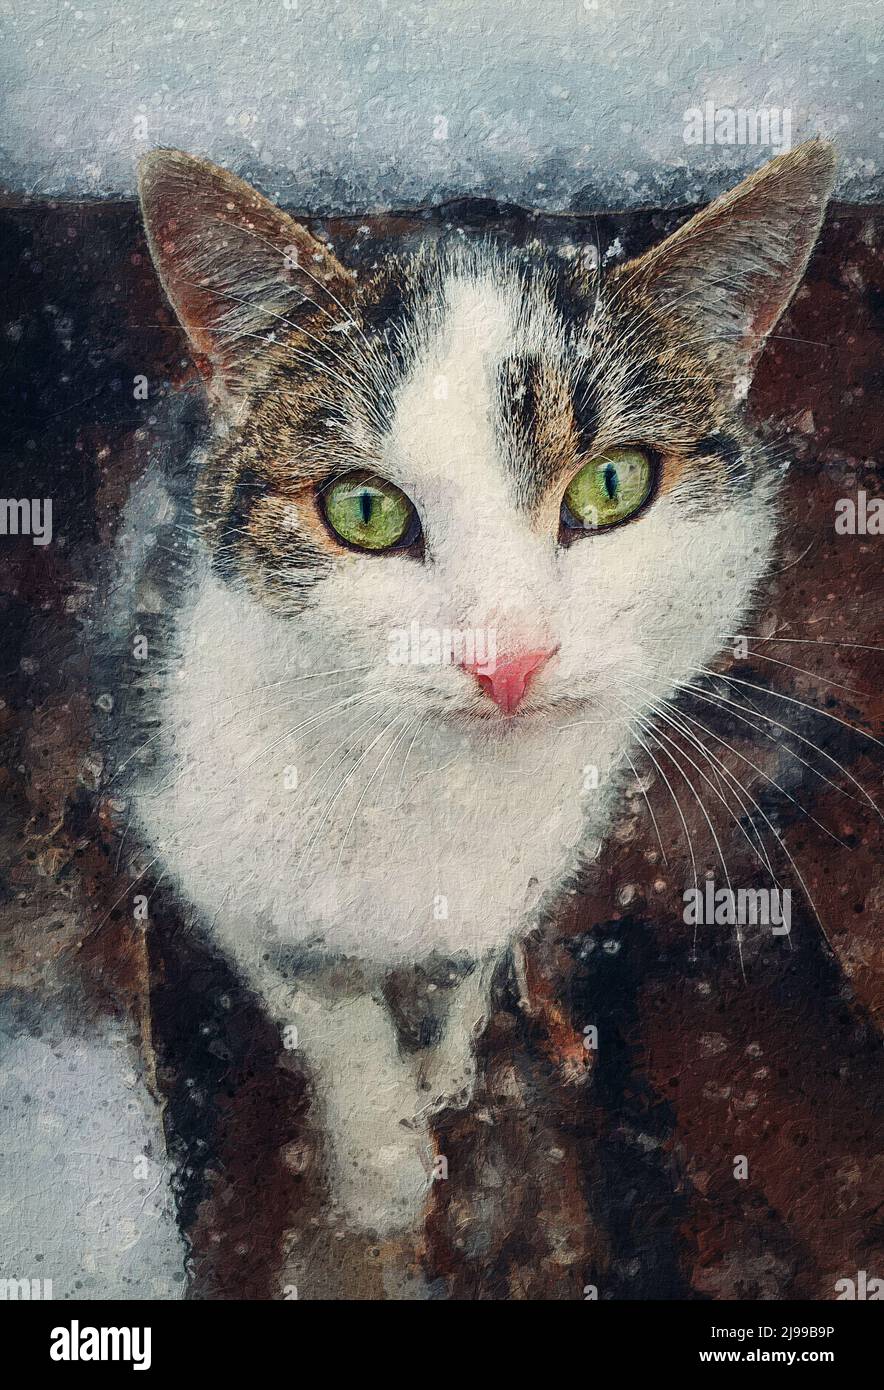 Tableau de portrait de chat. Gros plan chatons à l'extérieur, à l'abri de la neige. Beau visage de chaton, yeux merveilleux. Animaux de compagnie à l'extérieur, neige en hiver Banque D'Images